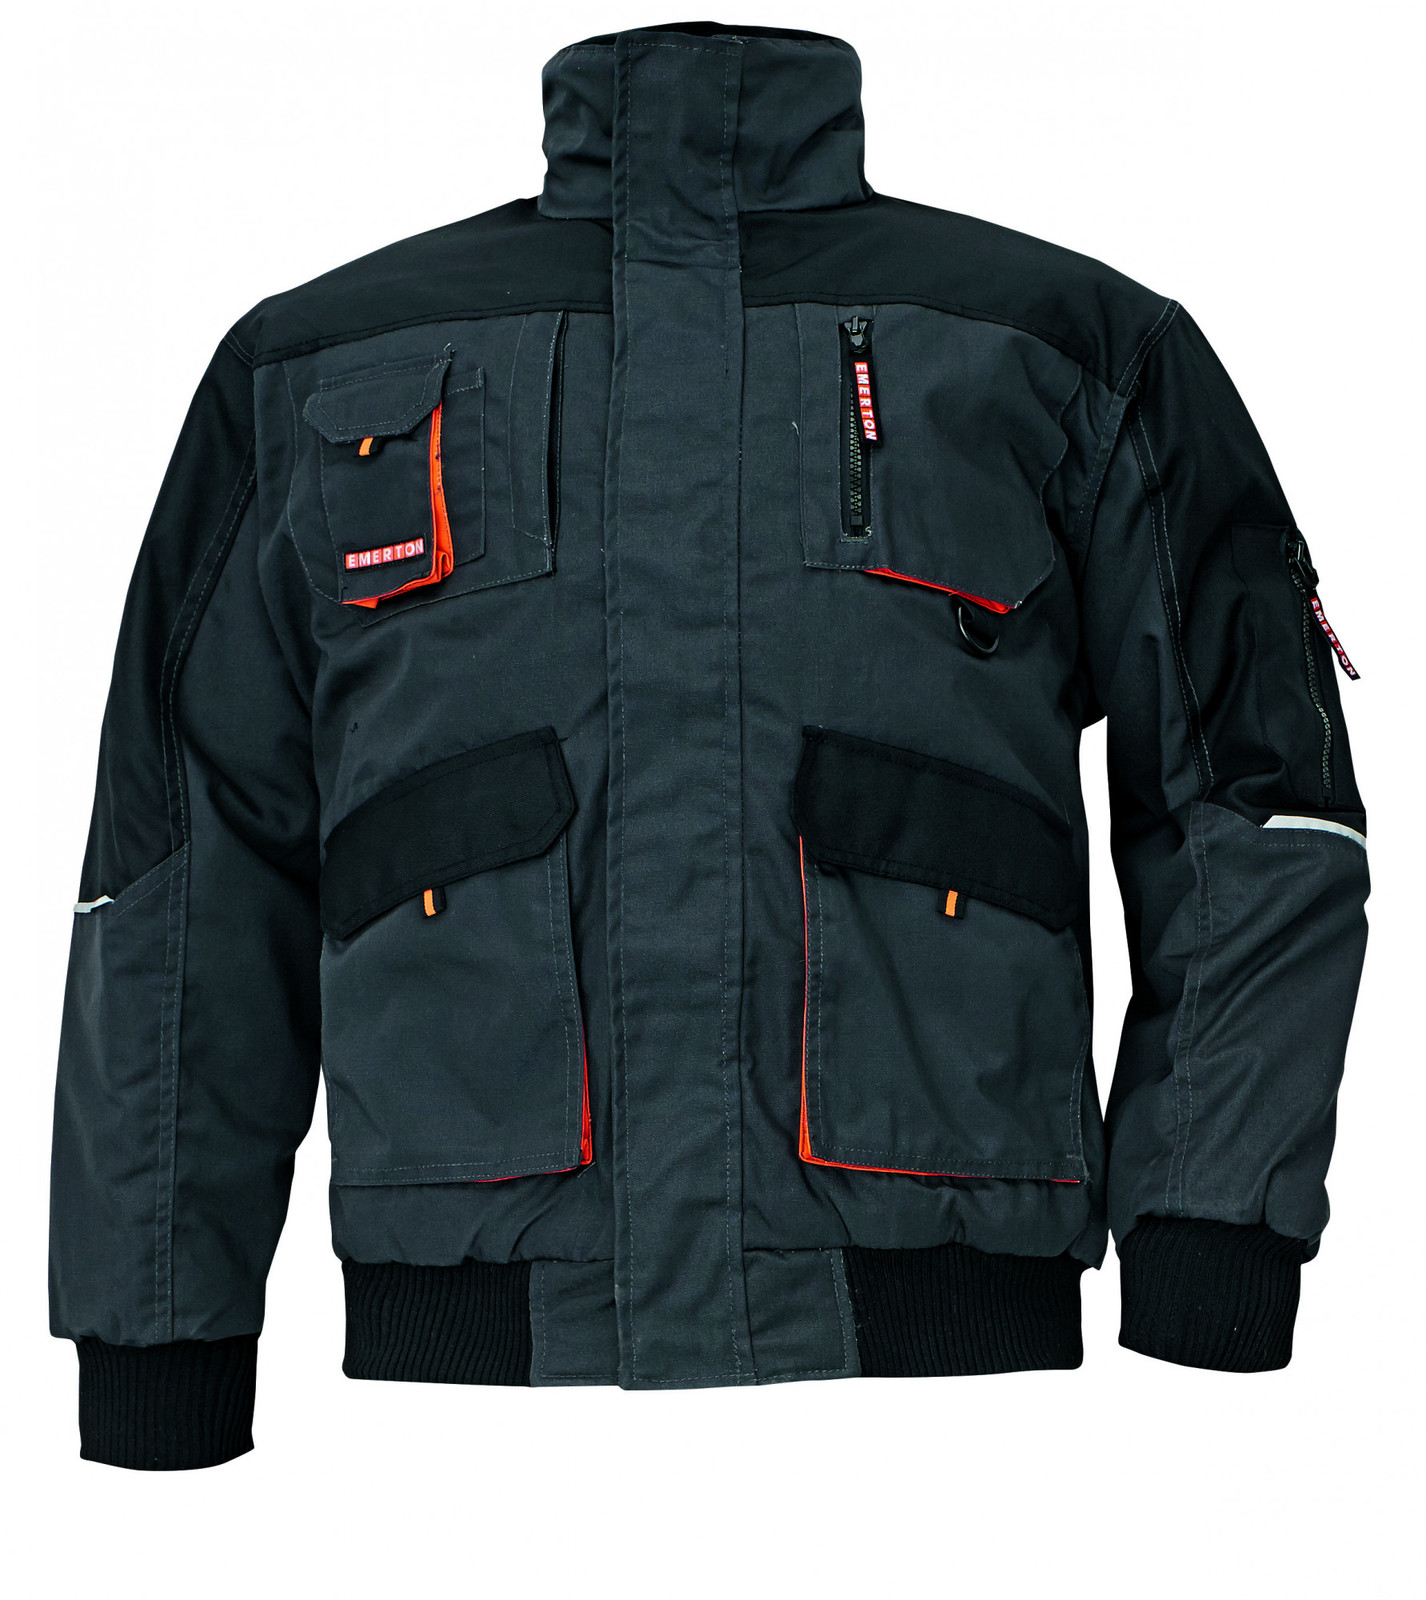 Zimná montérková bunda Emerton Pilot - veľkosť: S, farba: čierna